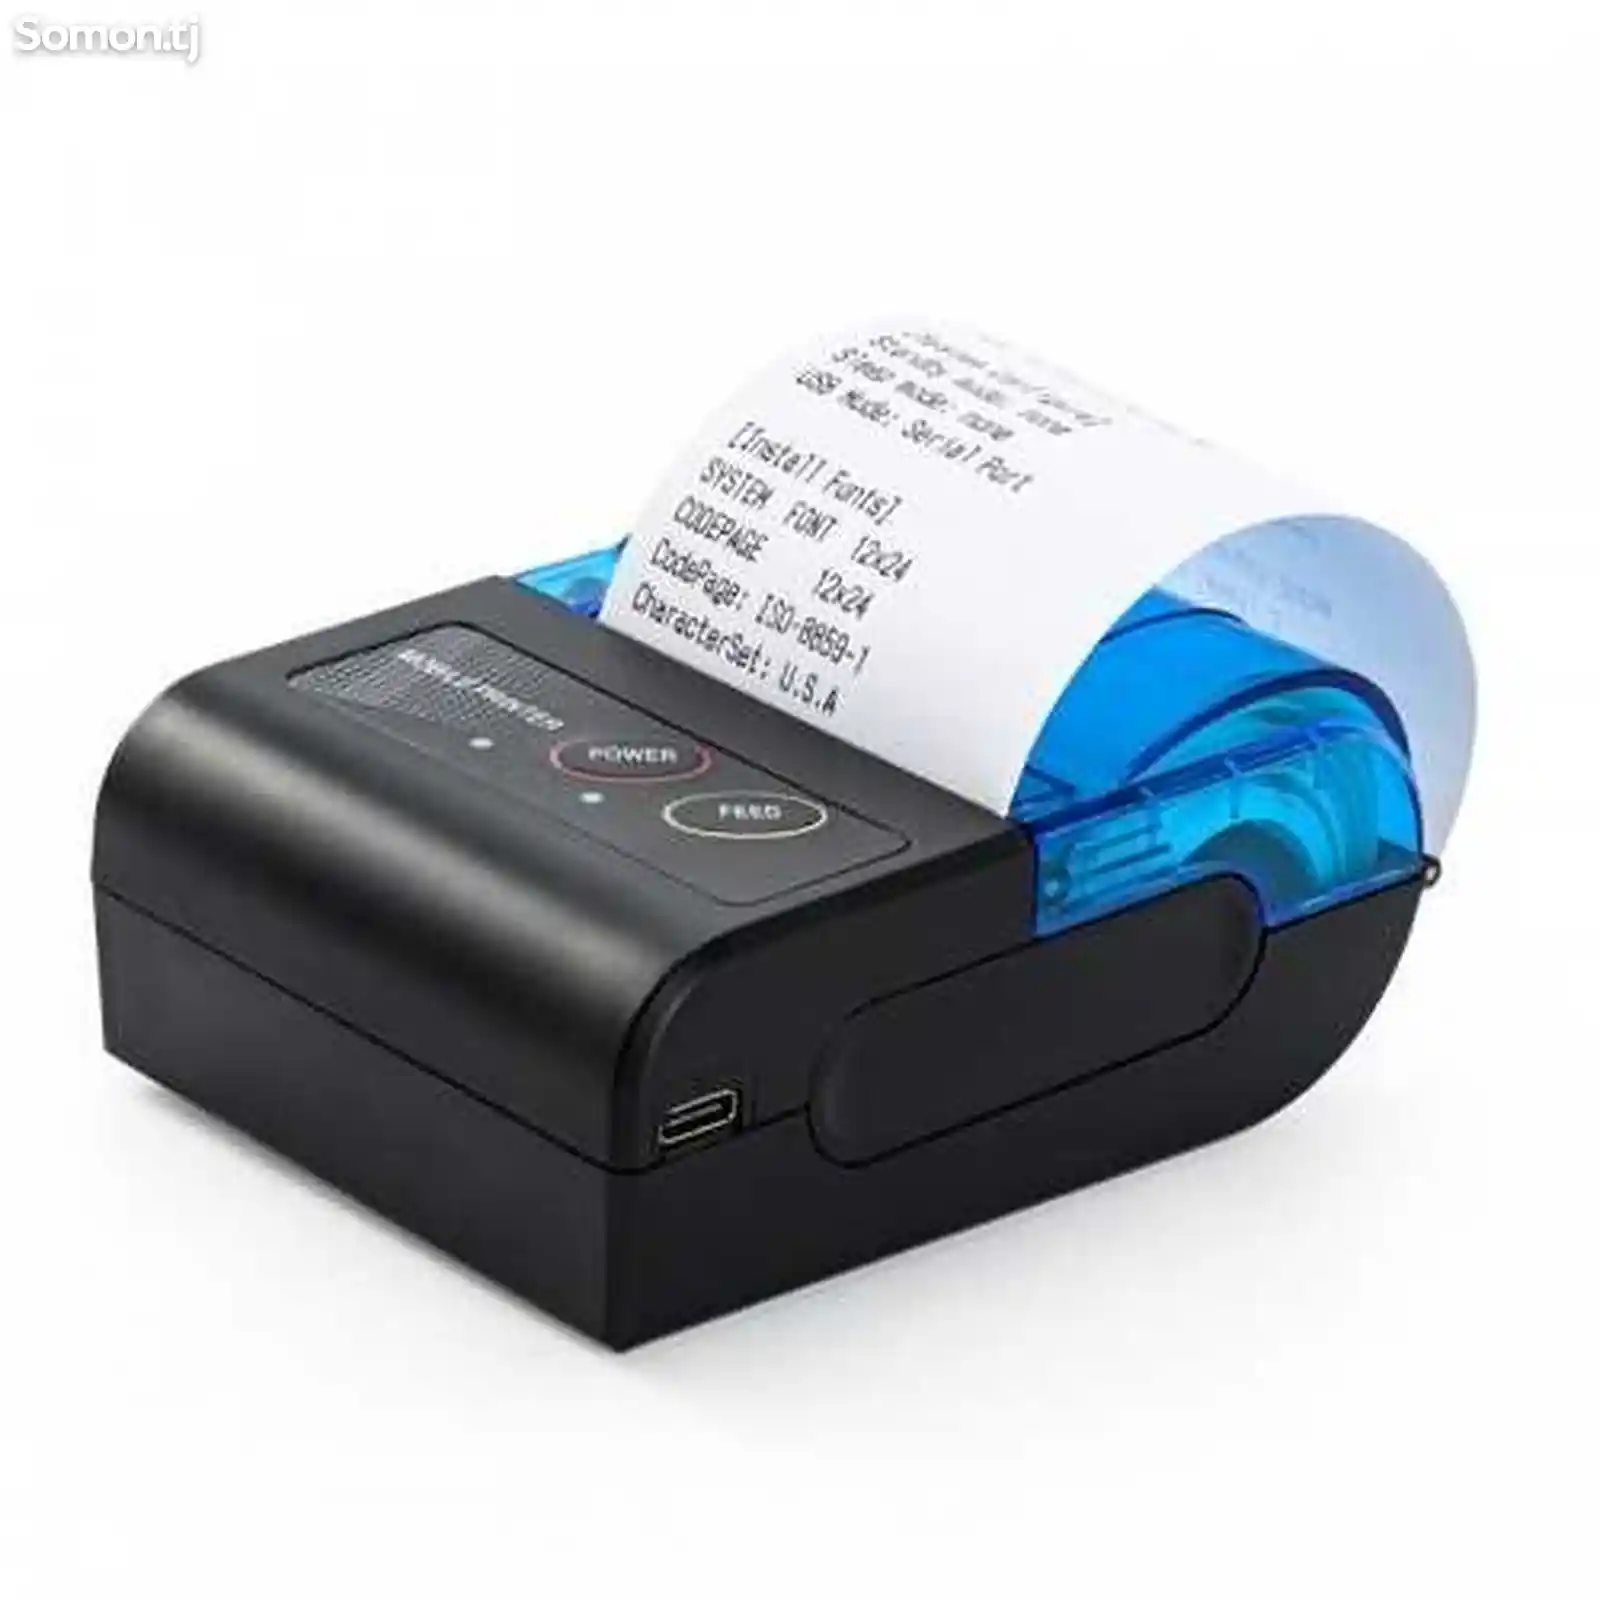 Мобильный принтер для печати чеков-5